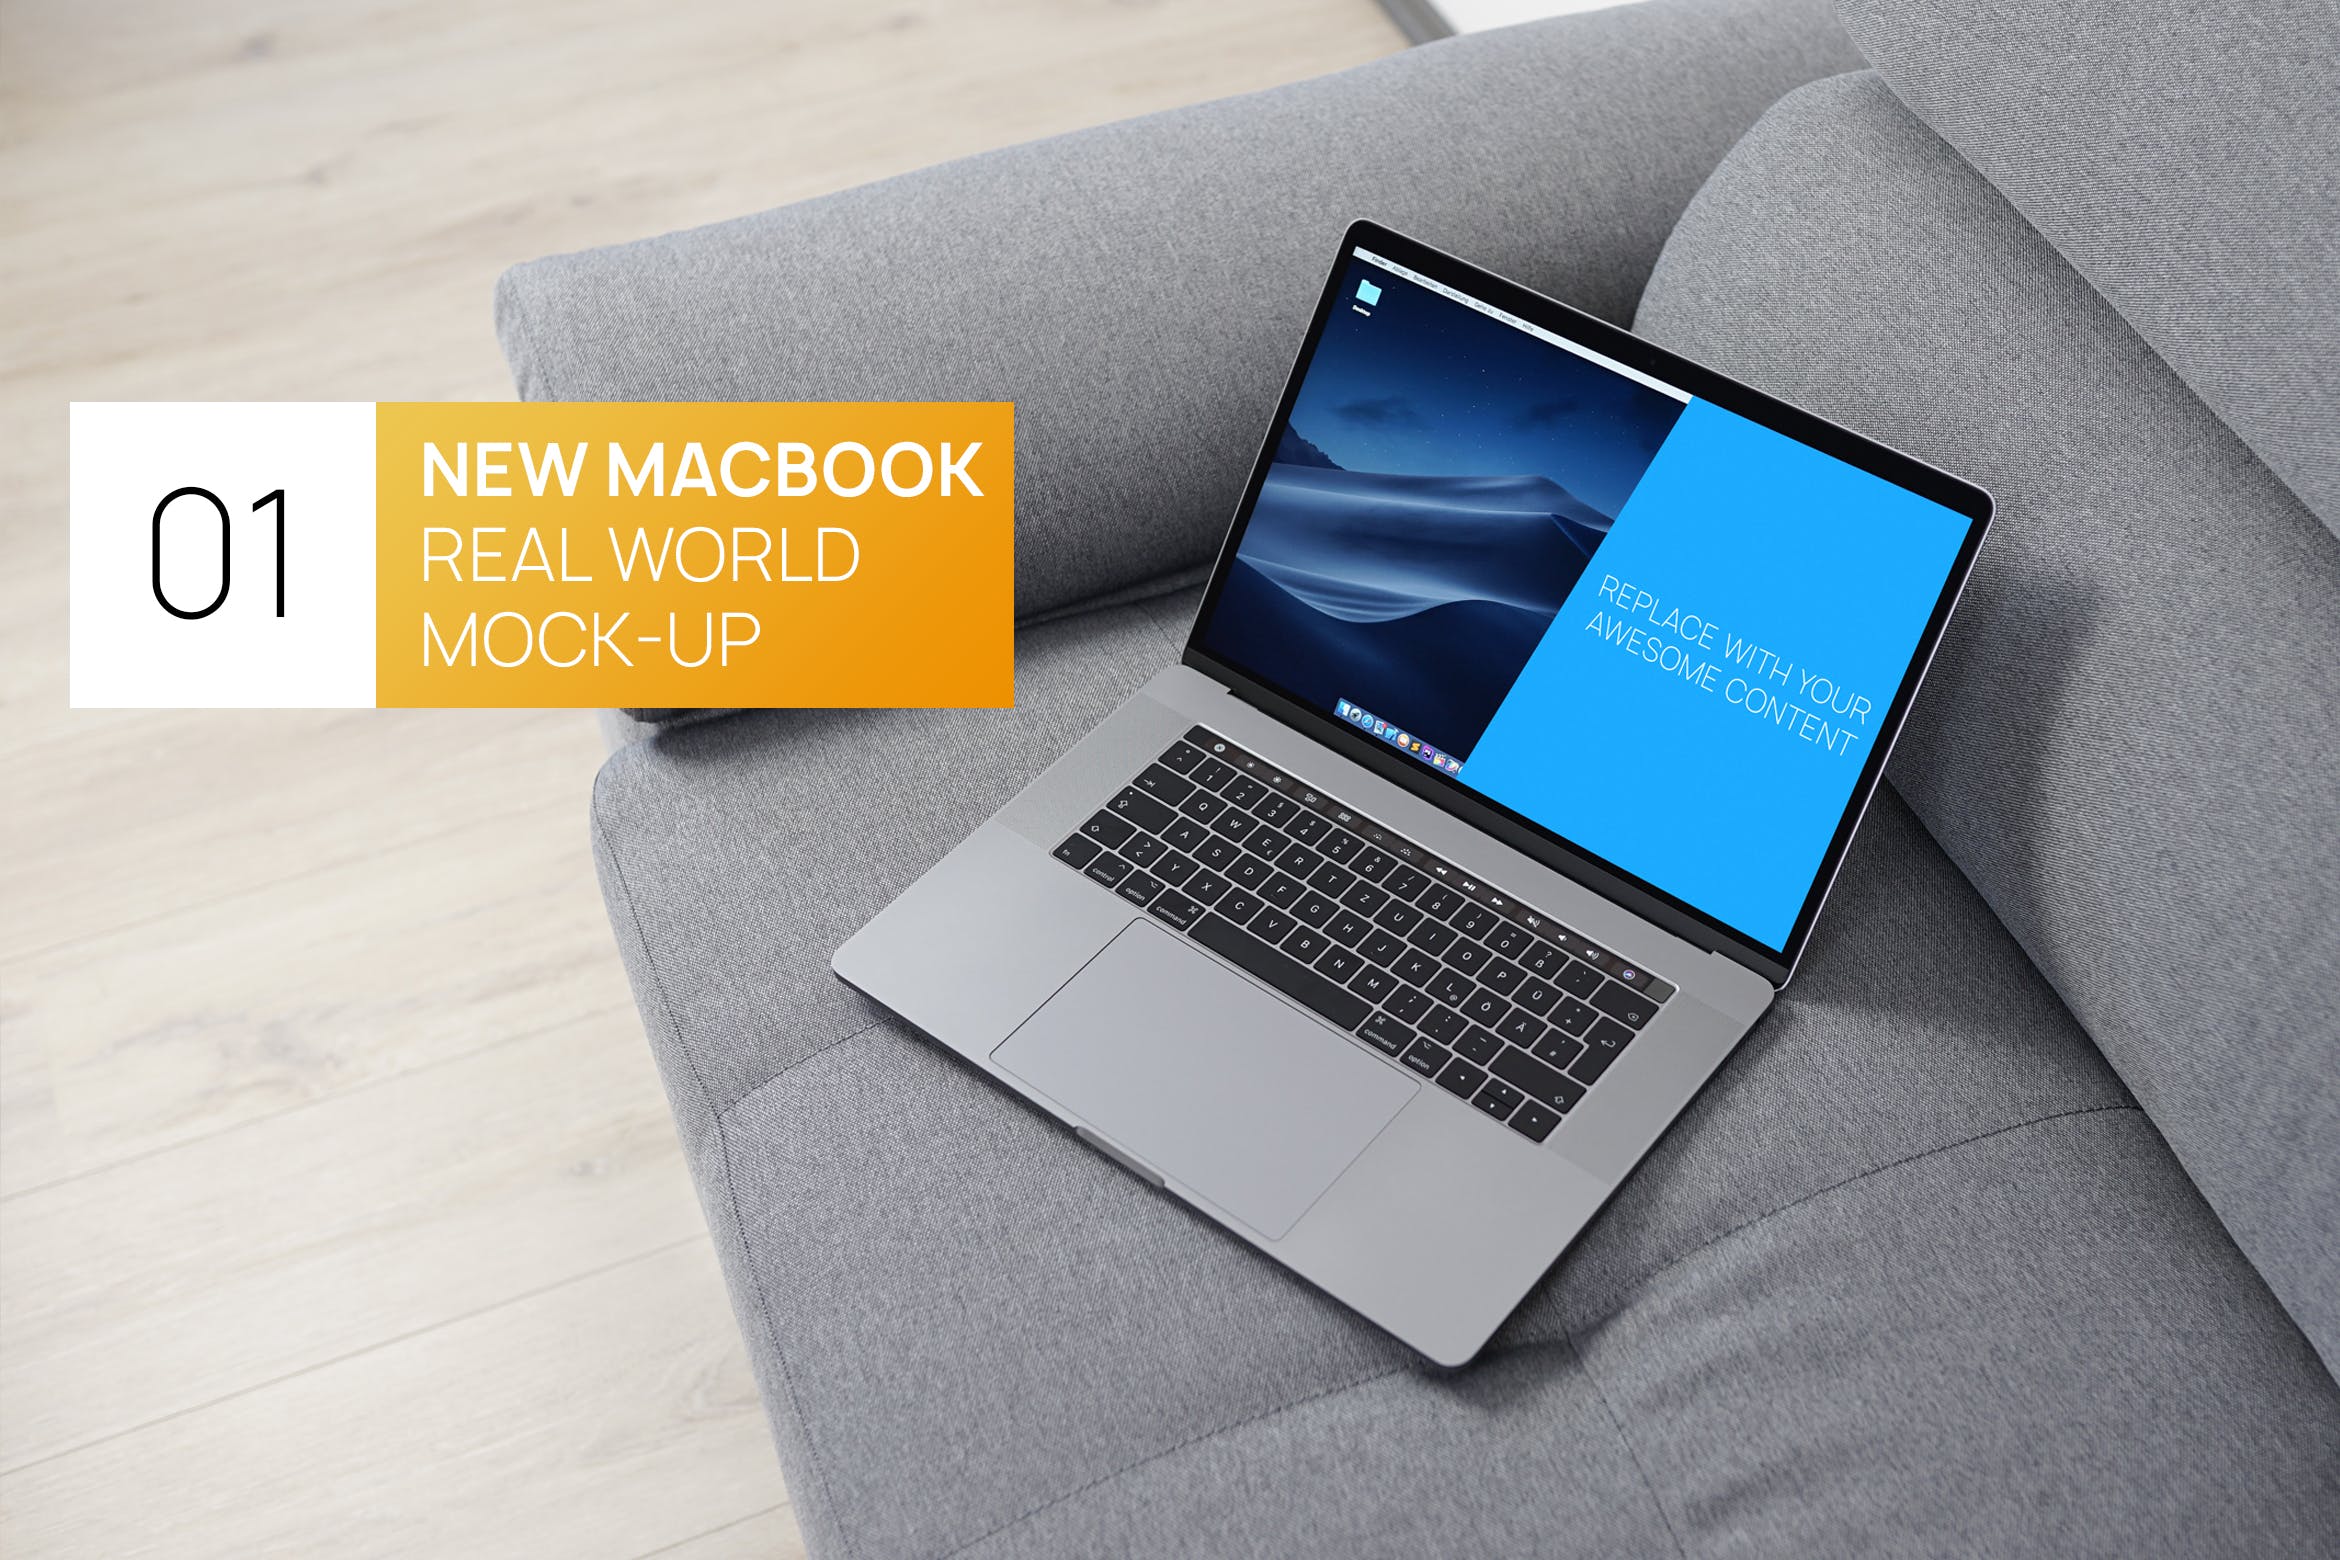 布艺沙发上的MacBook Pro电脑第一素材精选样机 New MacBook Pro Touchbar Real World Mock-up插图